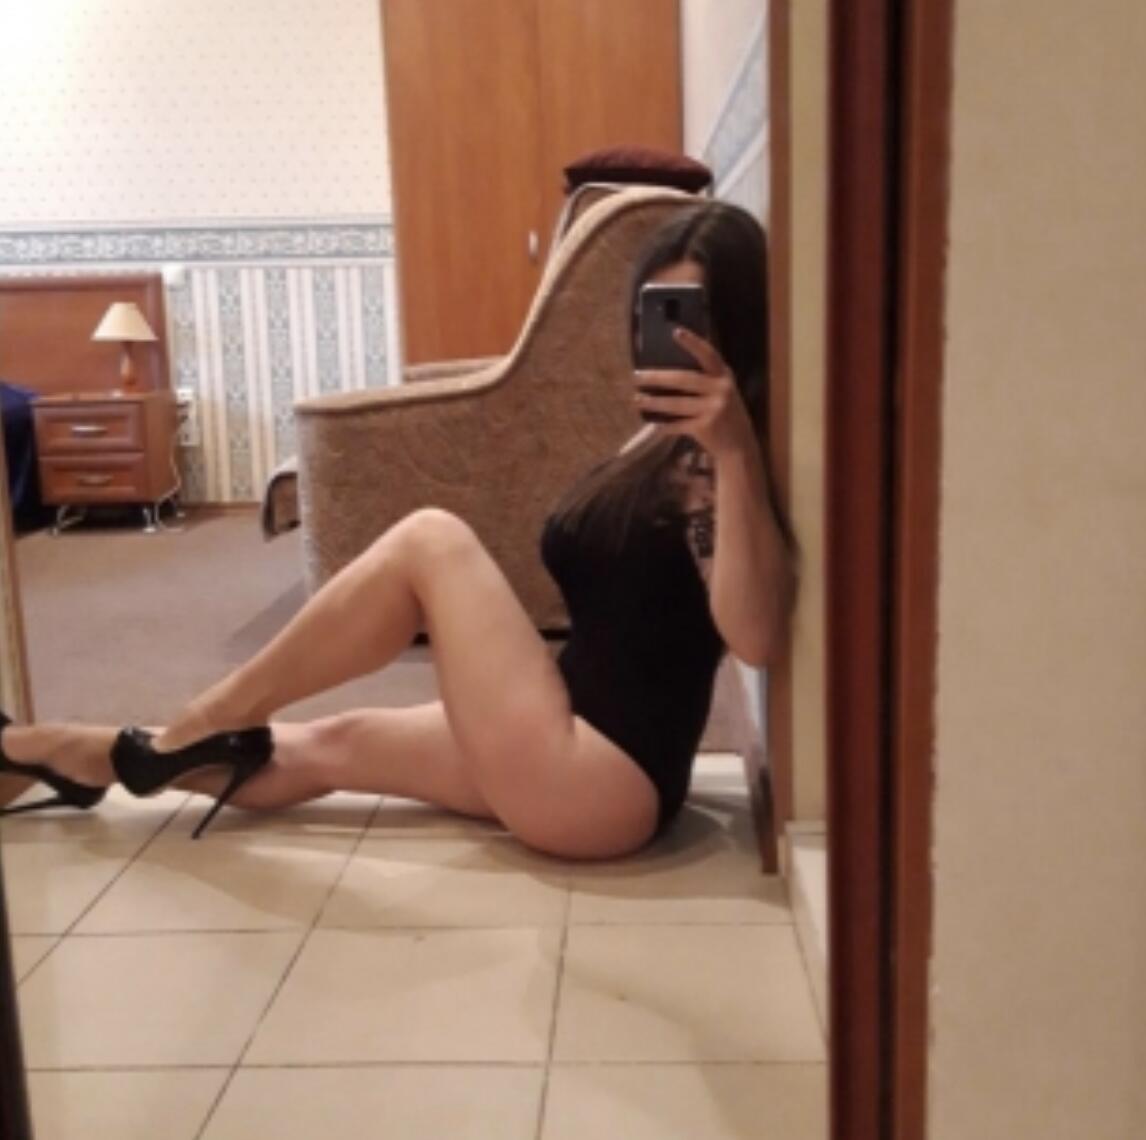 Проститутка Карина, фото 3, тел: 0970072482. В центре города - Киев